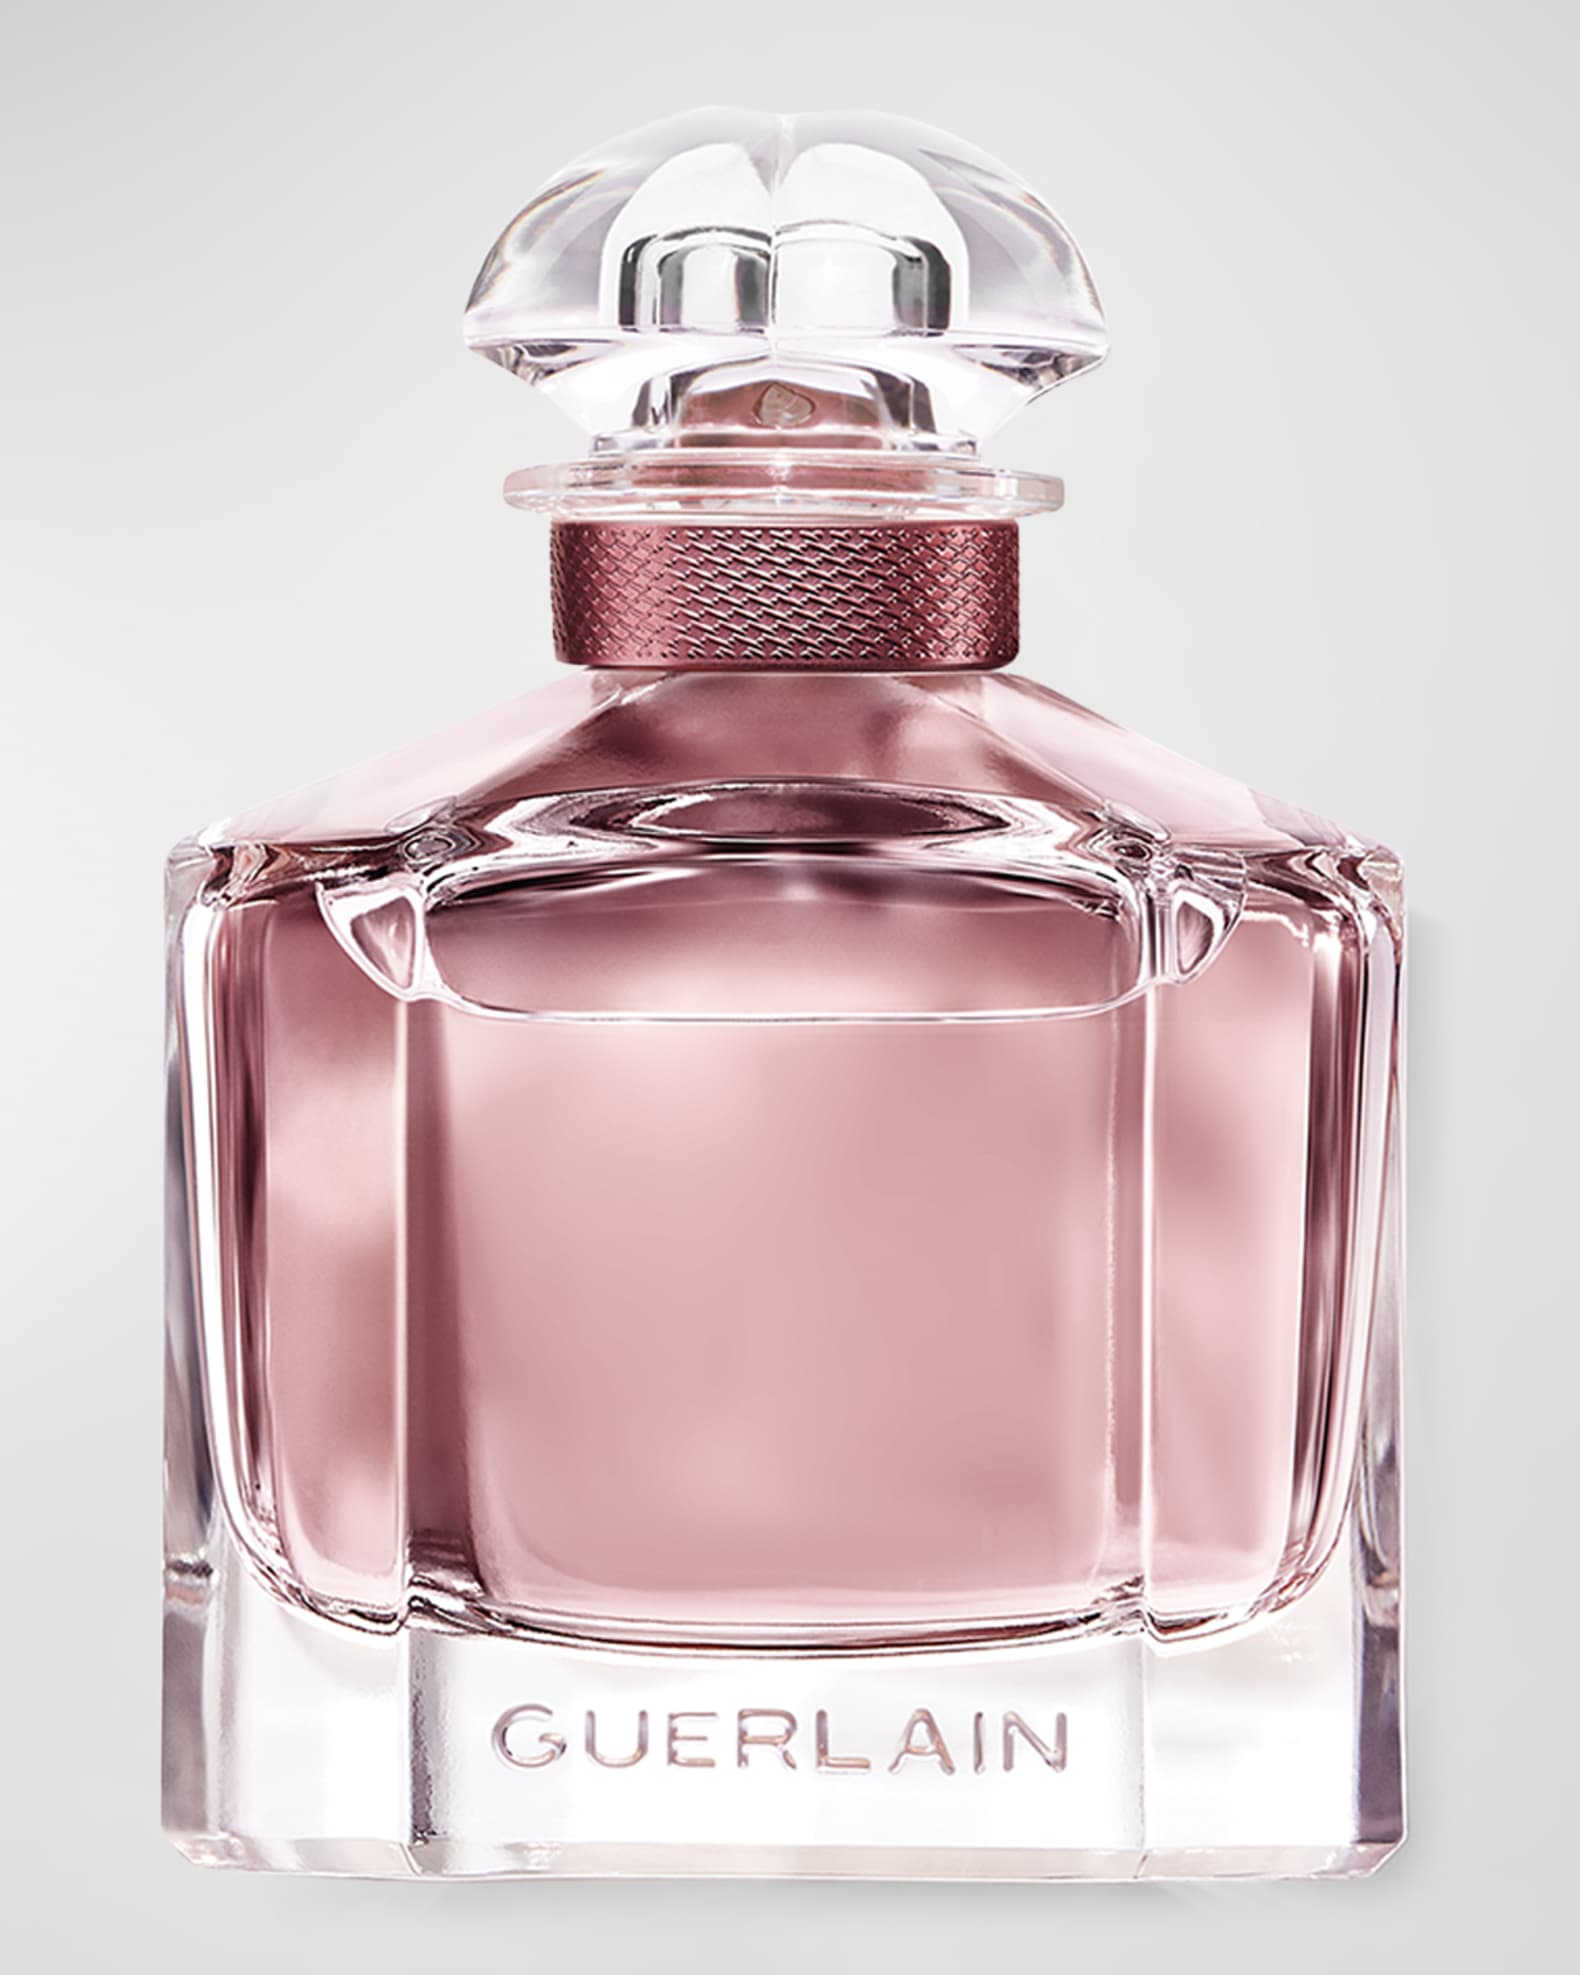 Louis+Vuitton+Matiere+Noire+Perfume+Eau+De+Parfum+3.4oz+100ml for sale  online